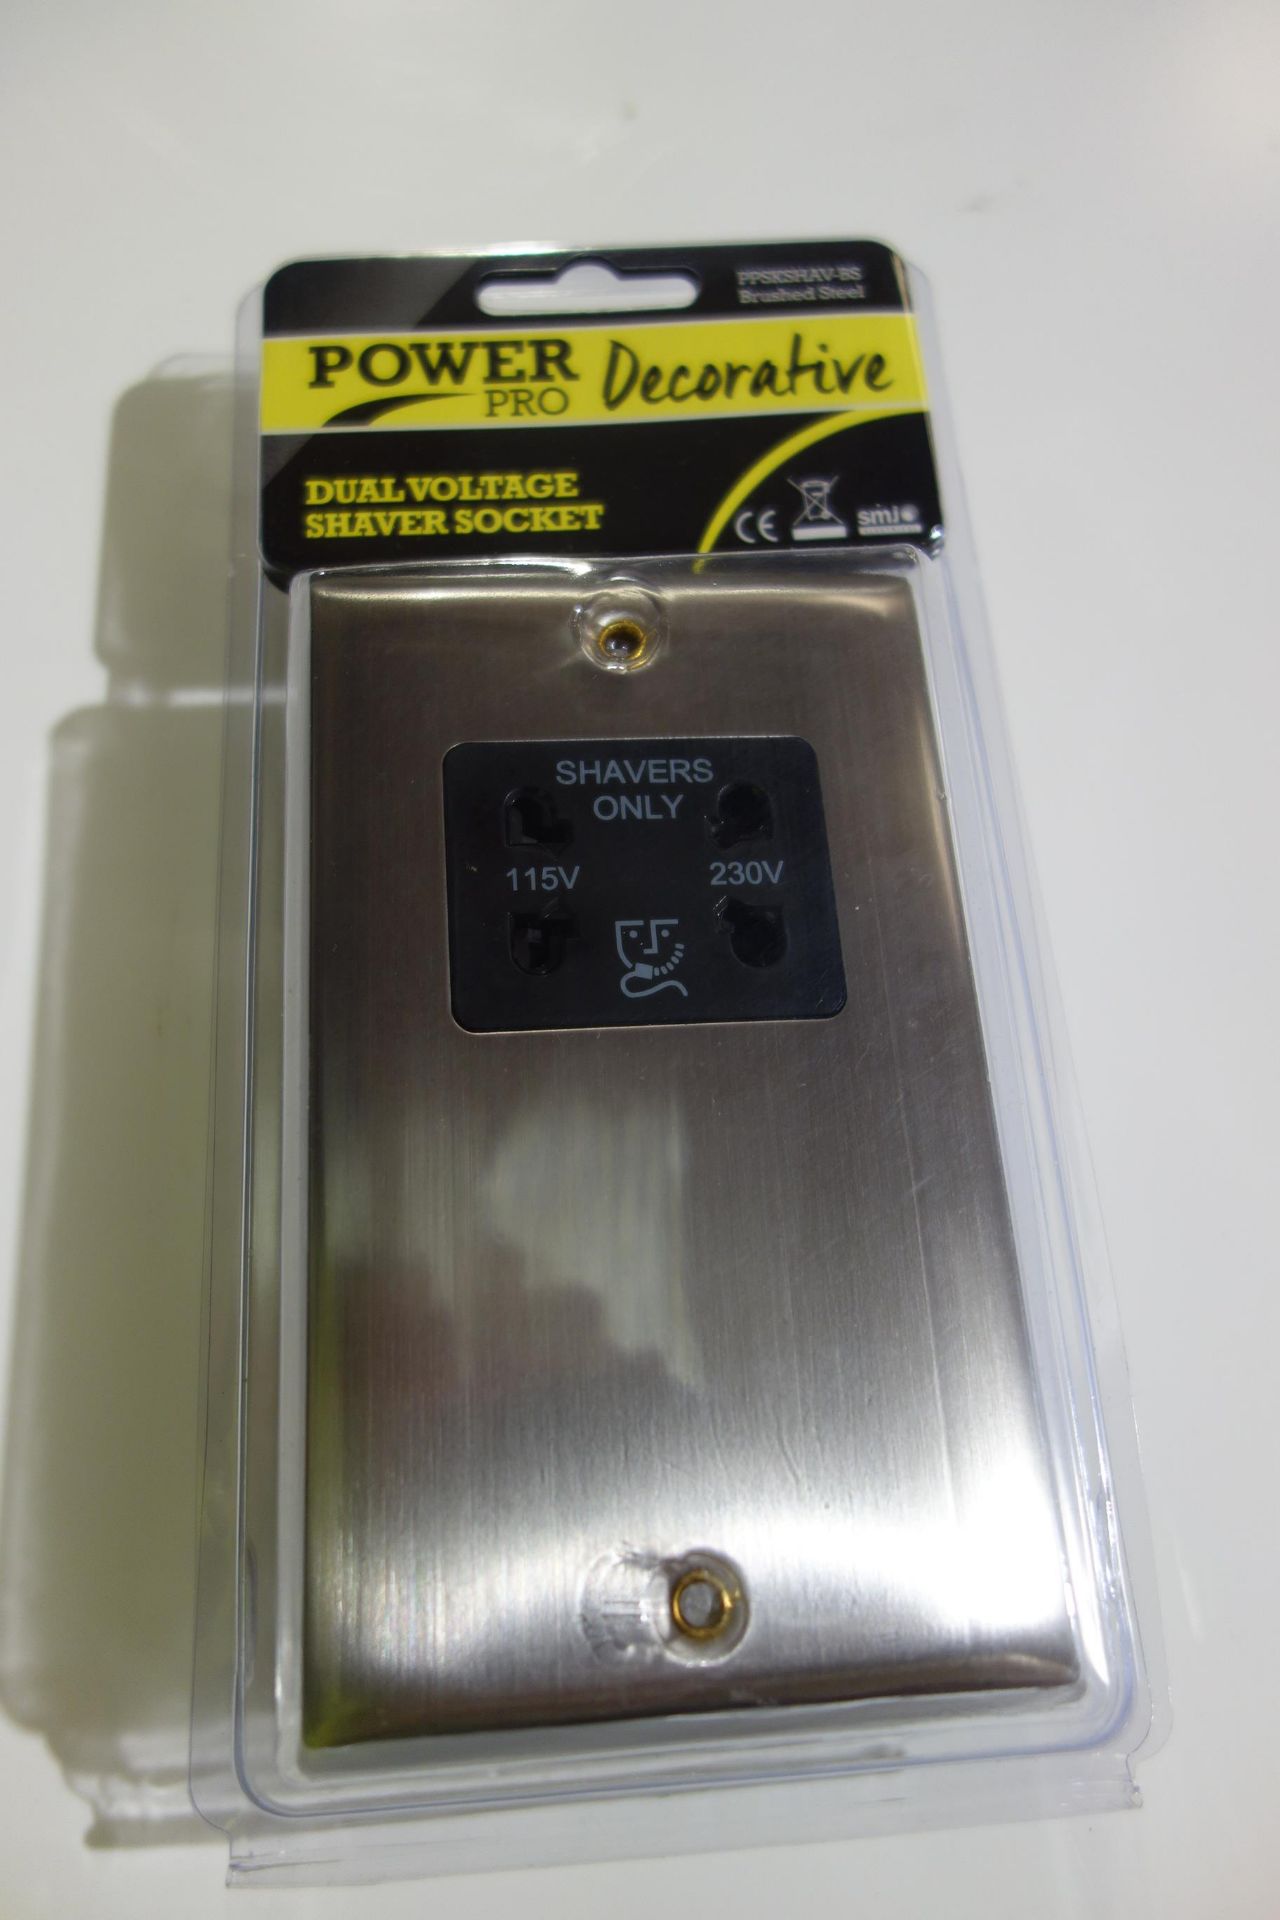 10 X SMJ PPSKSHAV-BS Power Pro Decorative Dual Voltage Shaver Socket Brushed Steel Finish Black